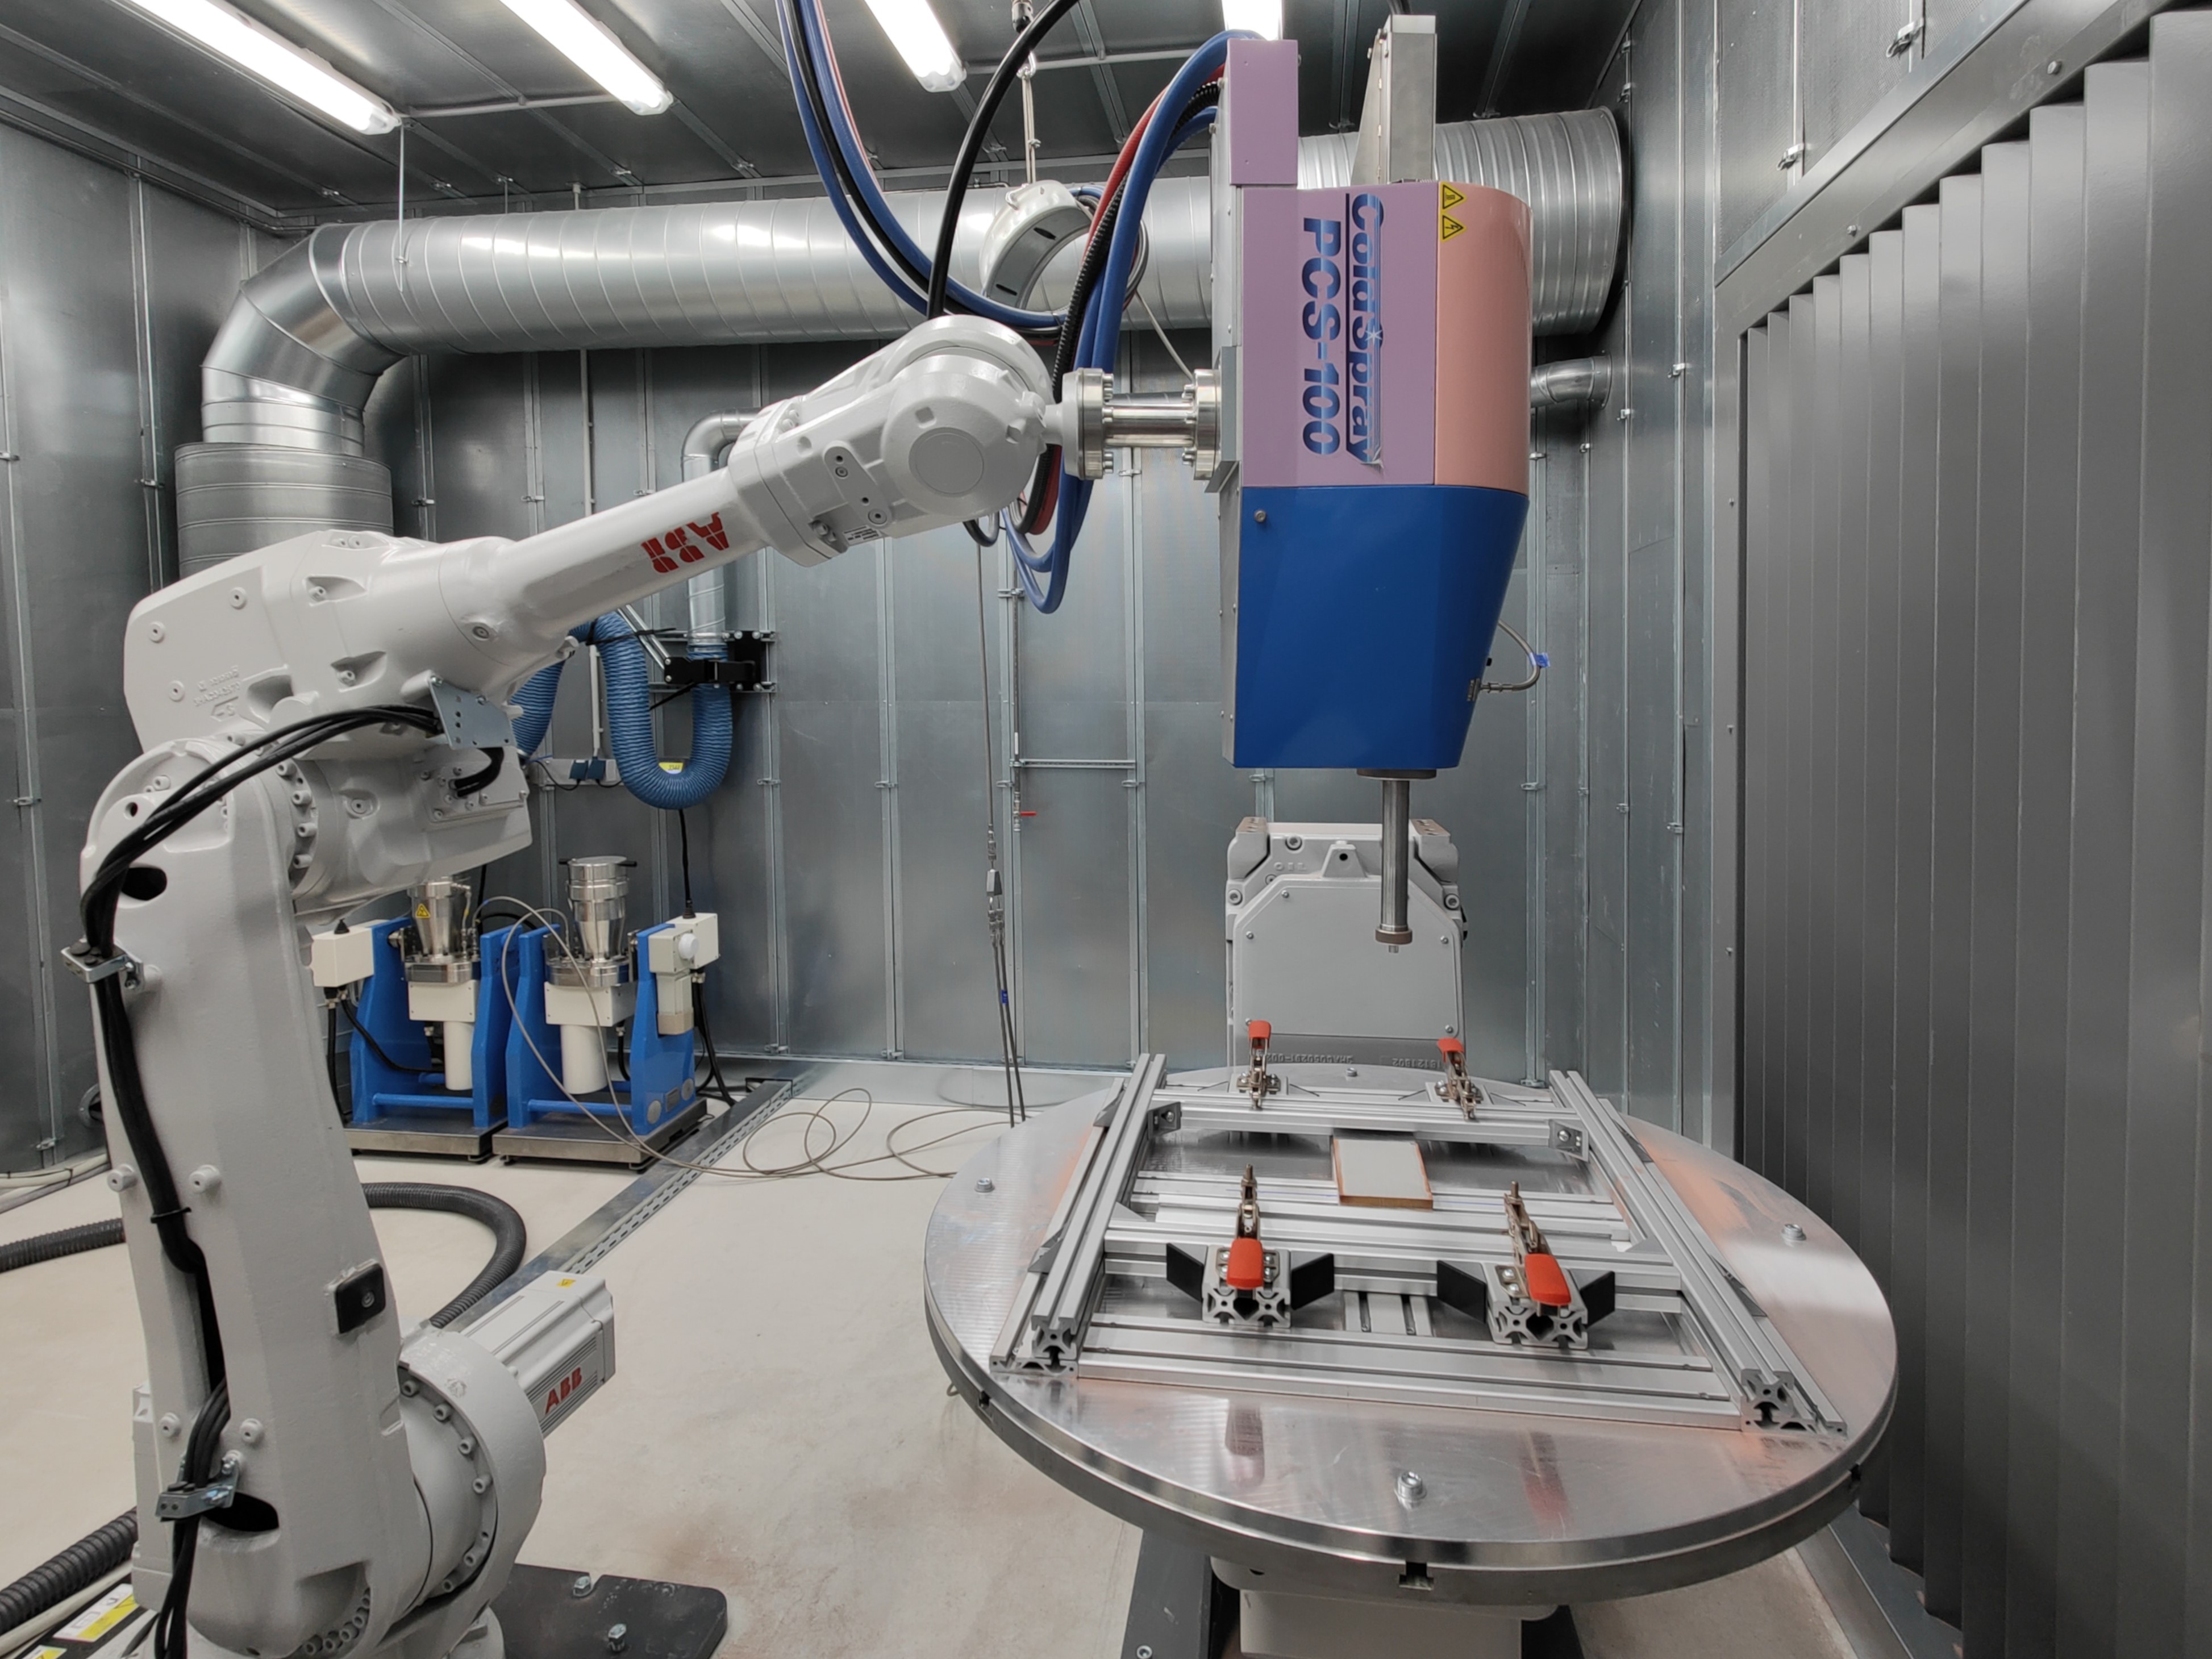 Abbildung 1: Roboter-basiertes Kaltgasspritzen zur Additiven Fertigung von Multimaterialbauteilen